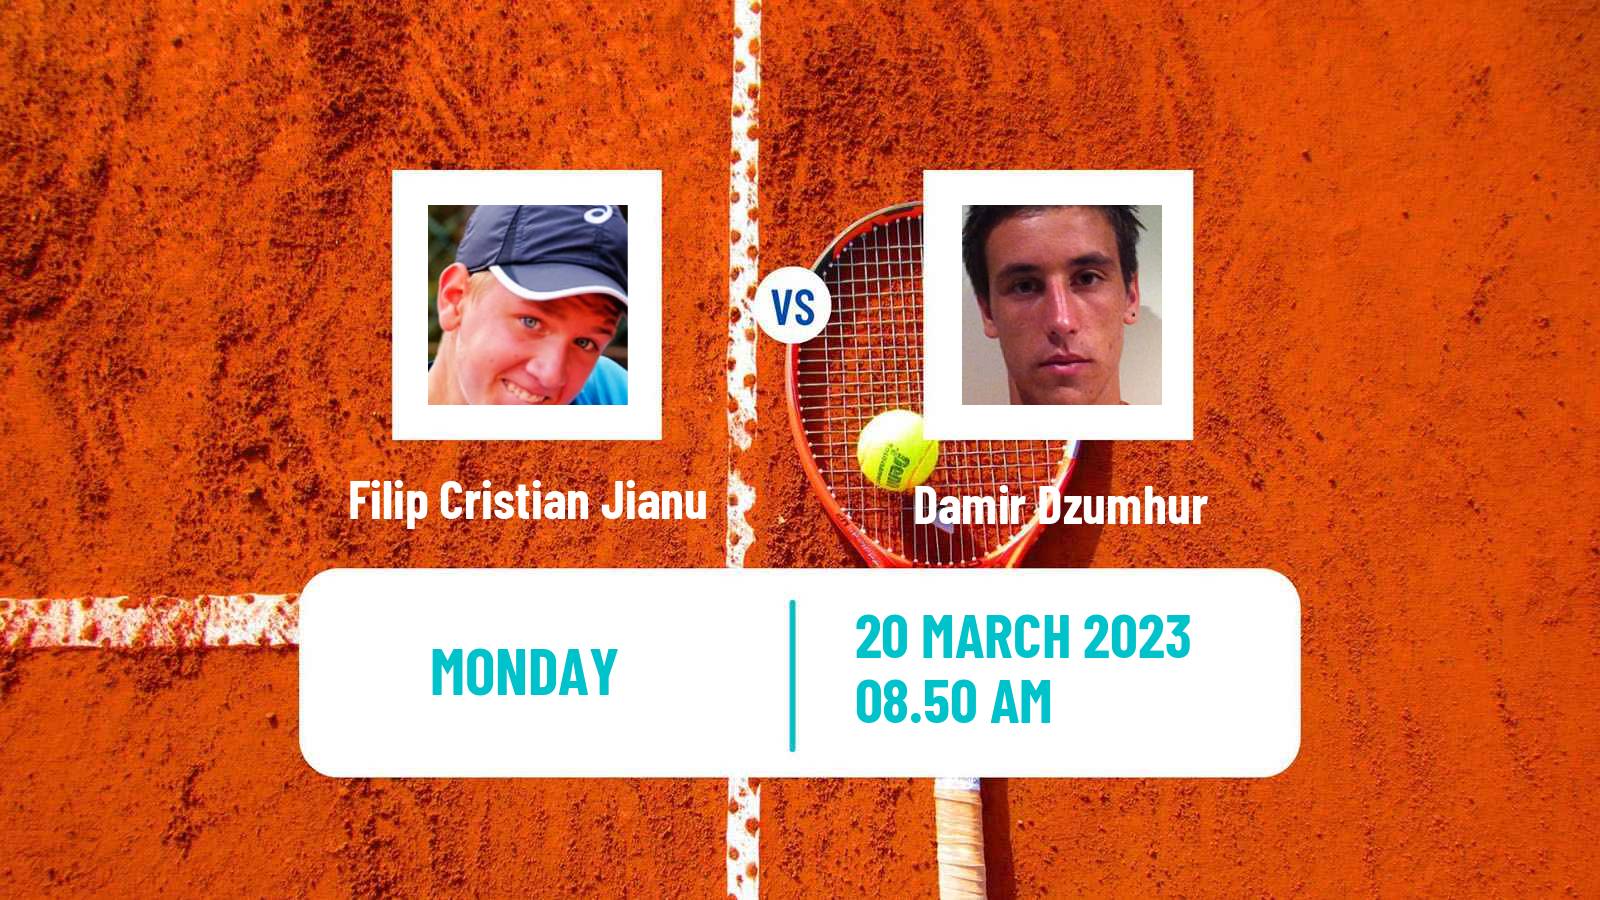 Tennis ATP Challenger Filip Cristian Jianu - Damir Dzumhur